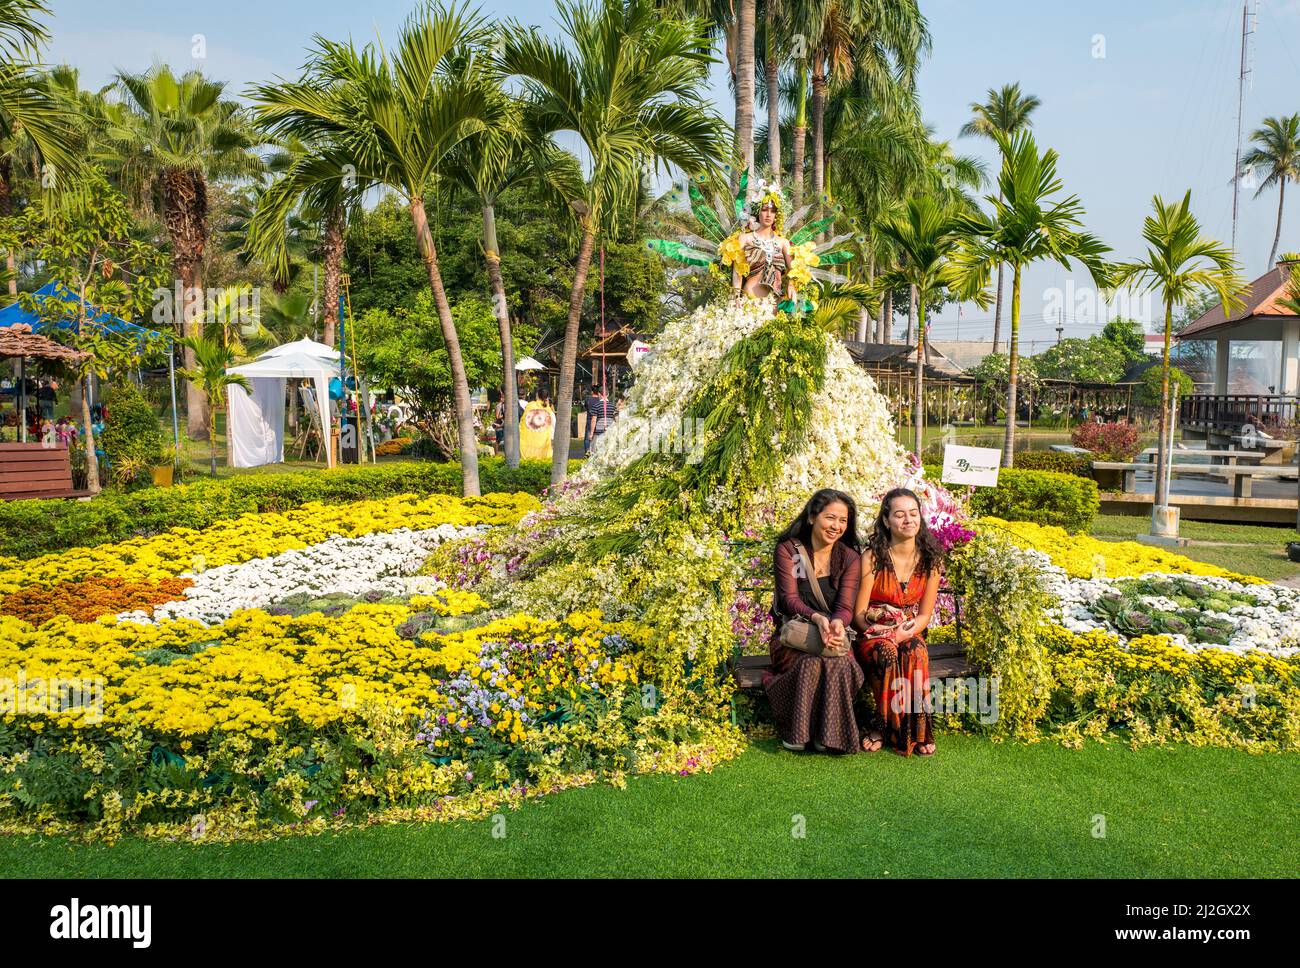 Le célèbre Festival des fleurs de Chiang Mai. Chiang Mai est une destination de voyage majeure dans le nord de la Thaïlande. Banque D'Images